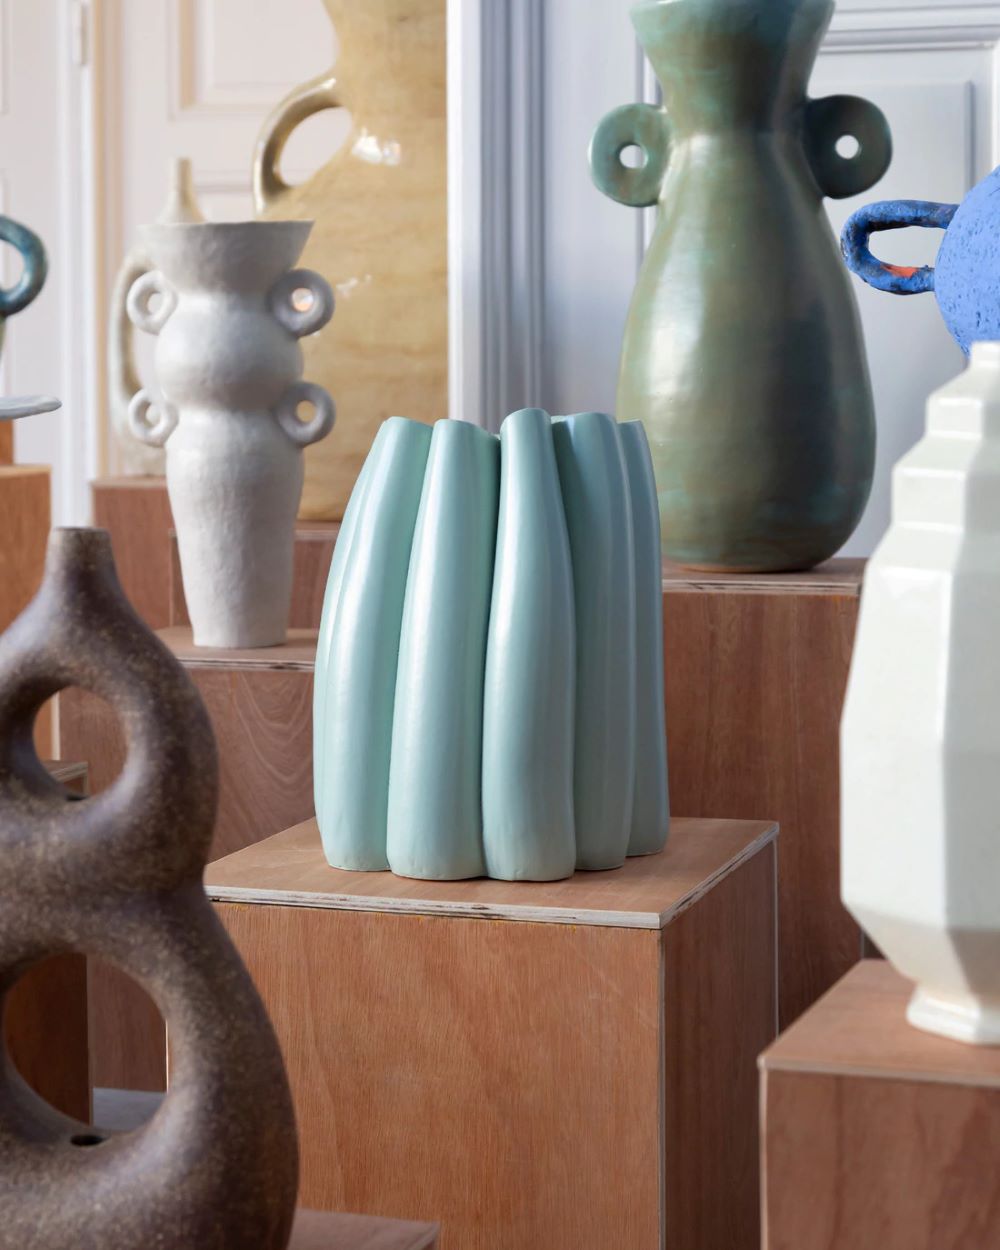 Les ceramiques d Heloise Piraud, entre tradition et innovation